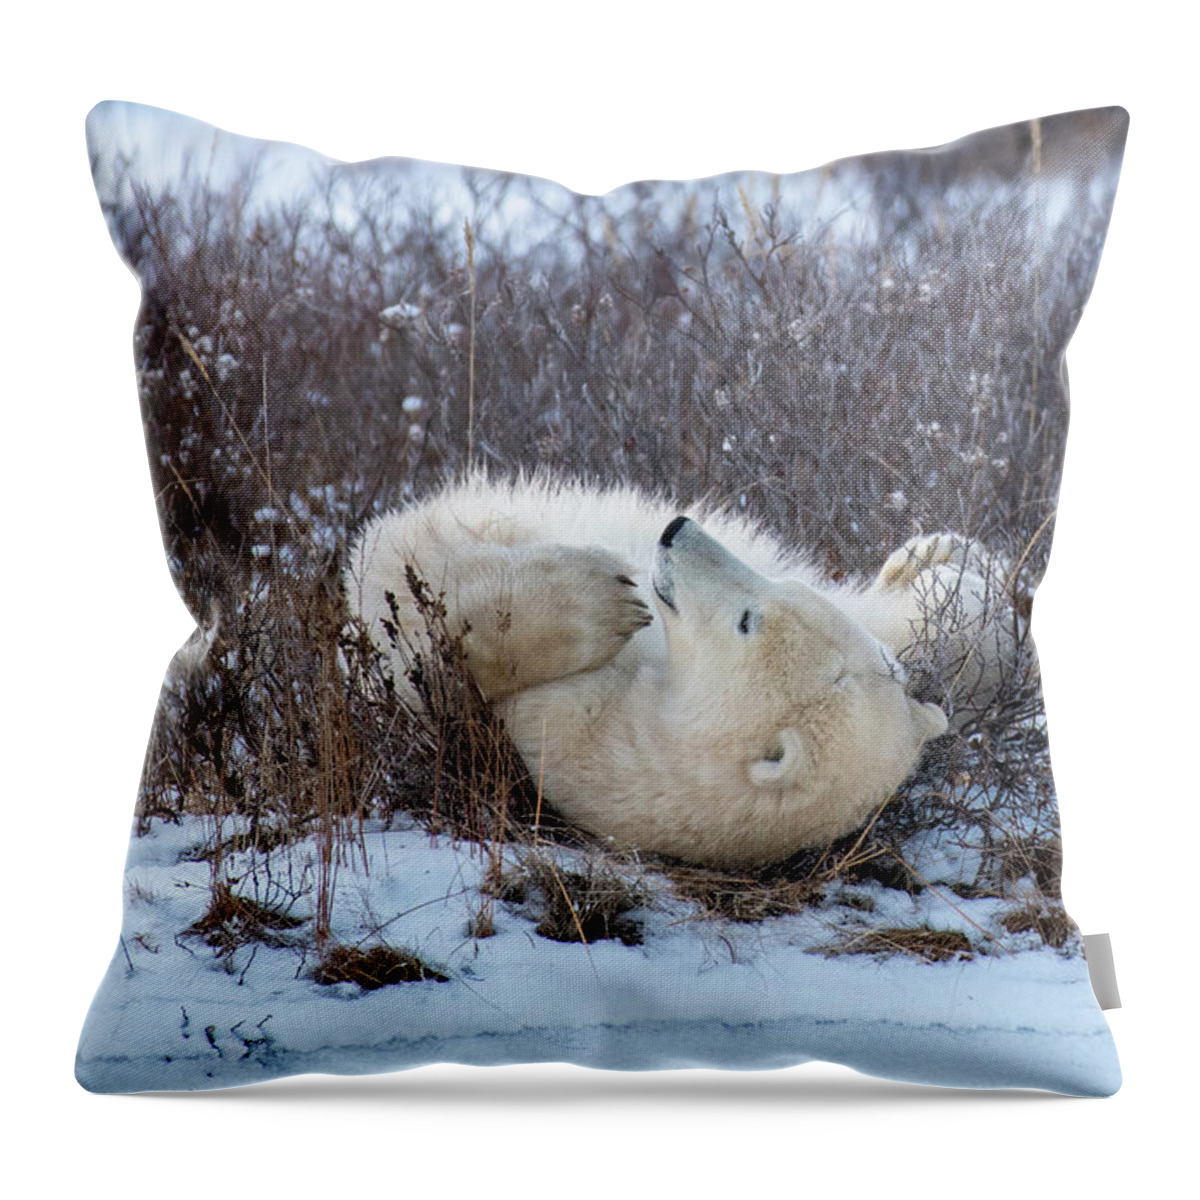 Polar Bear Throw Pillow featuring the photograph Happy Polar Bear by Mark Hunter